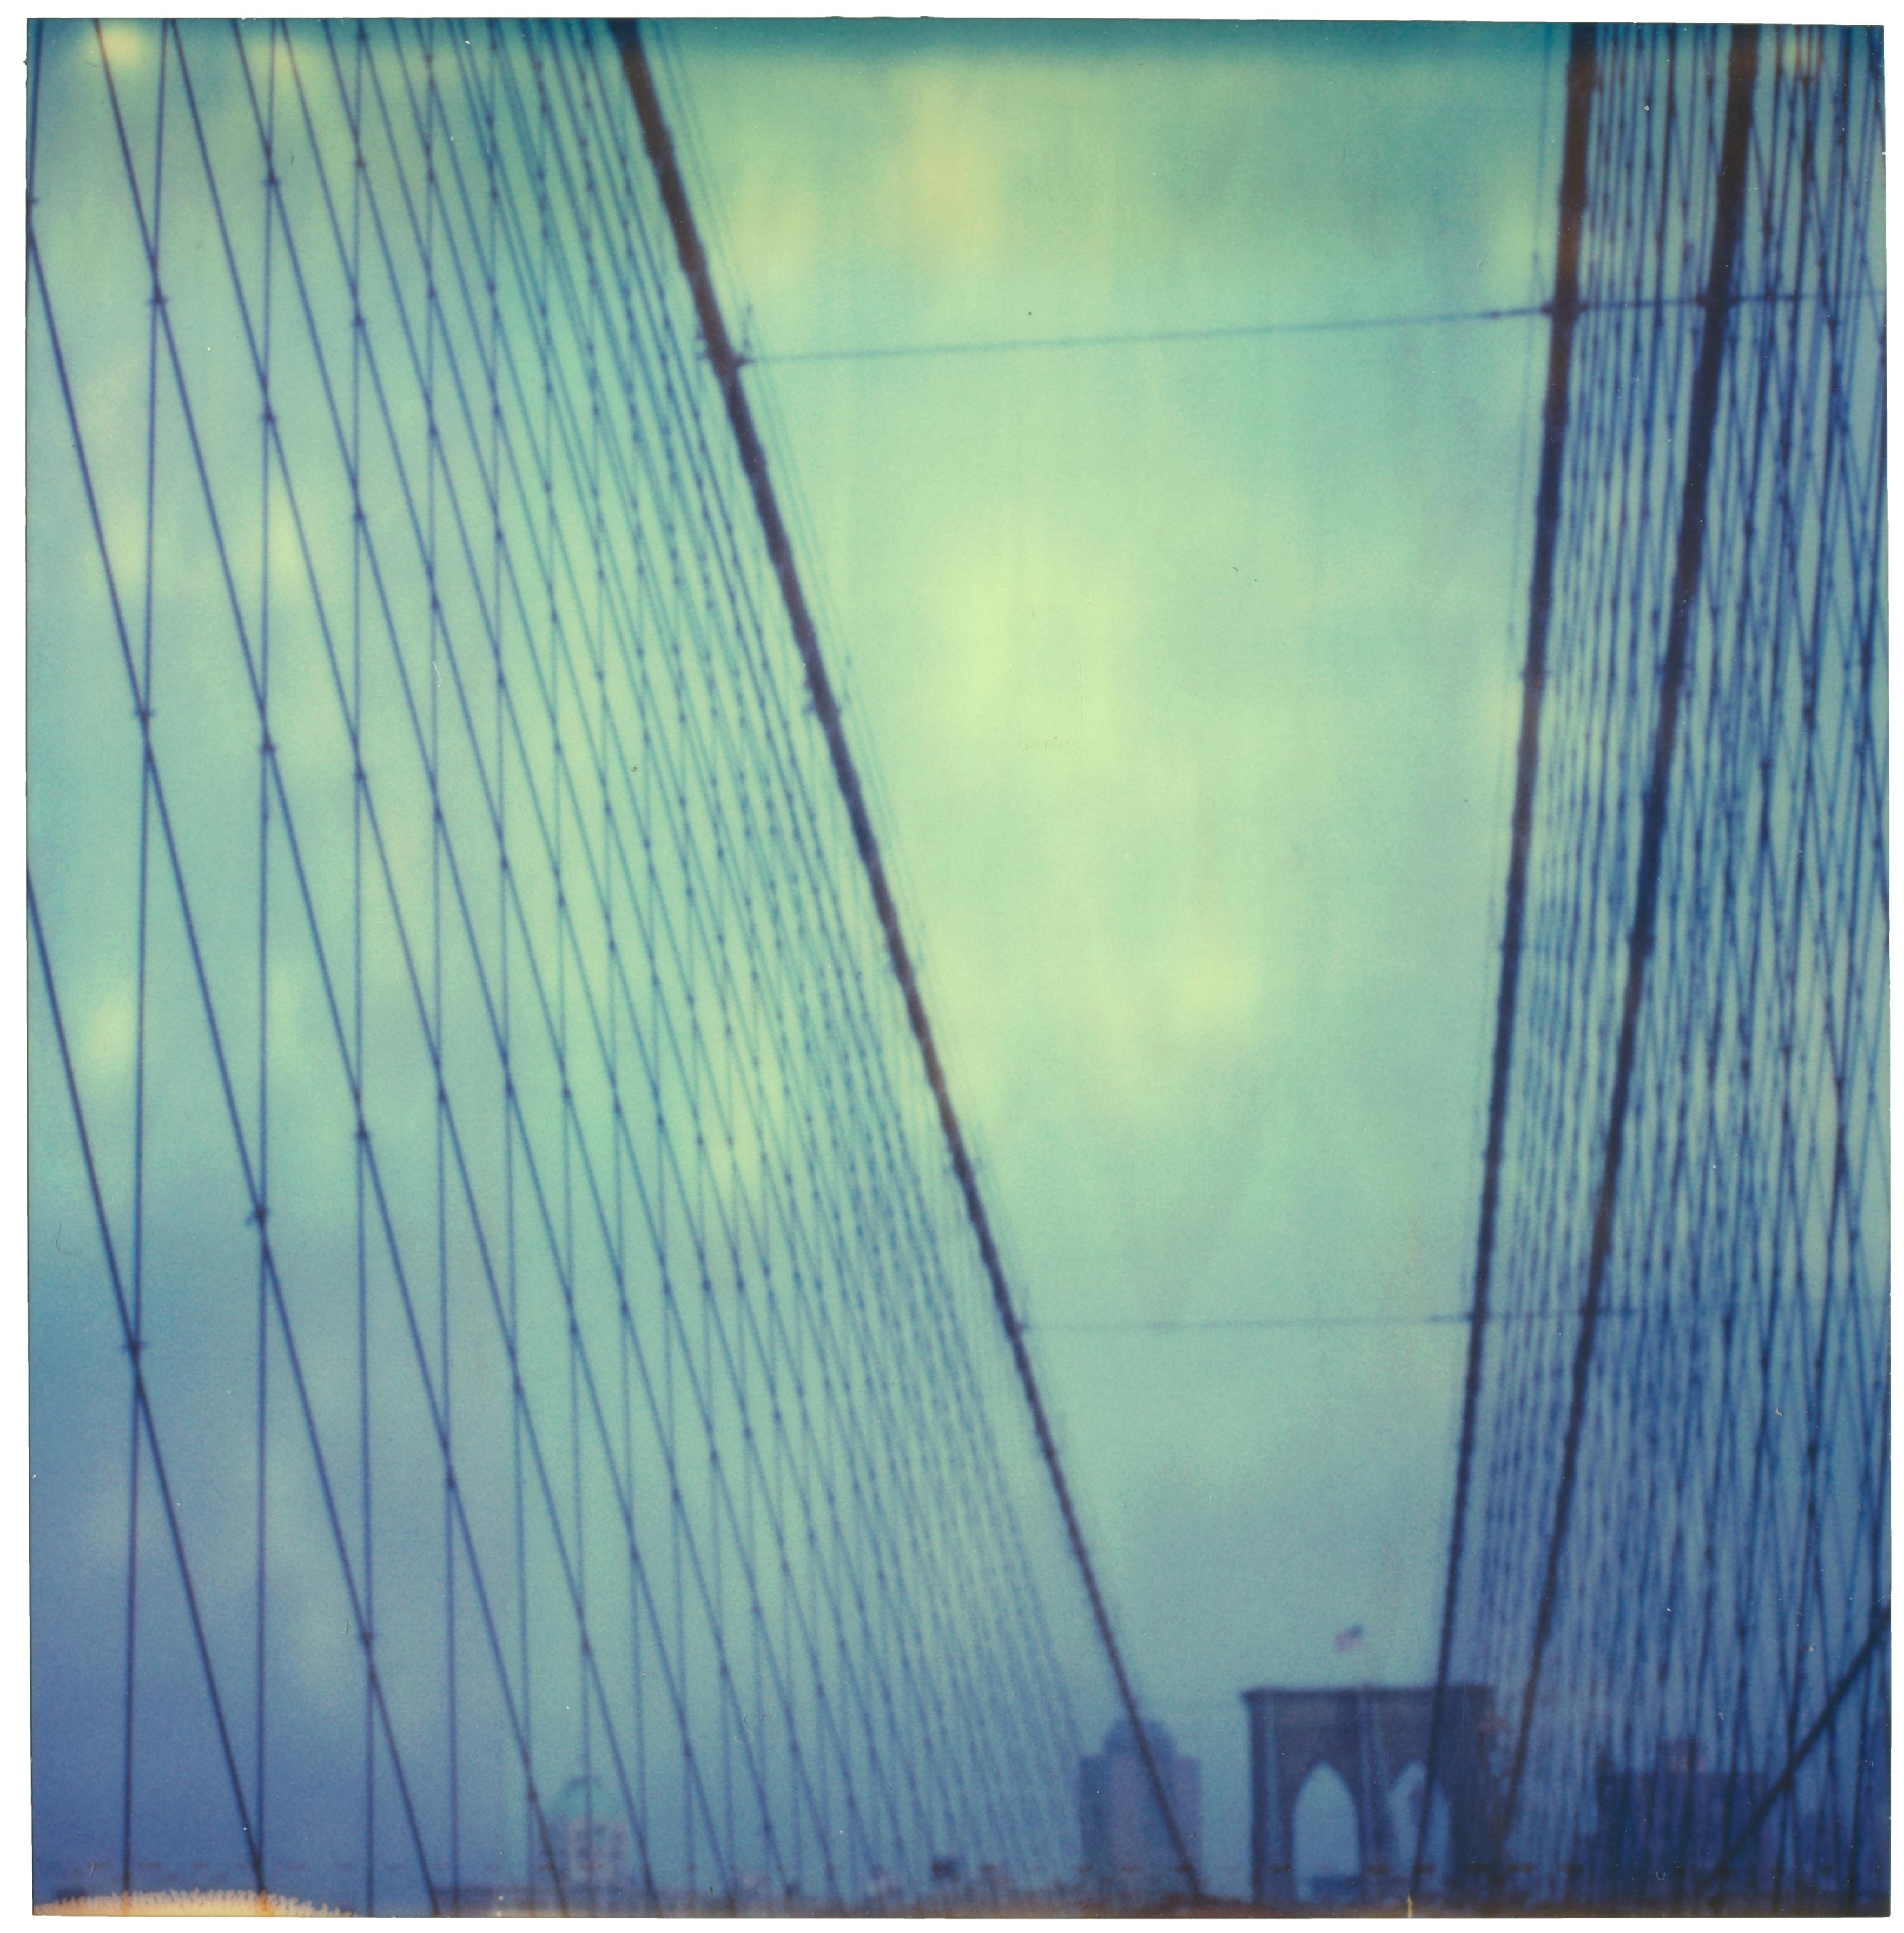 Landscape Photograph Stefanie Schneider - Bridge de Brooklyn (Stay) - Polaroid, 21e siècle, contemporain, couleur